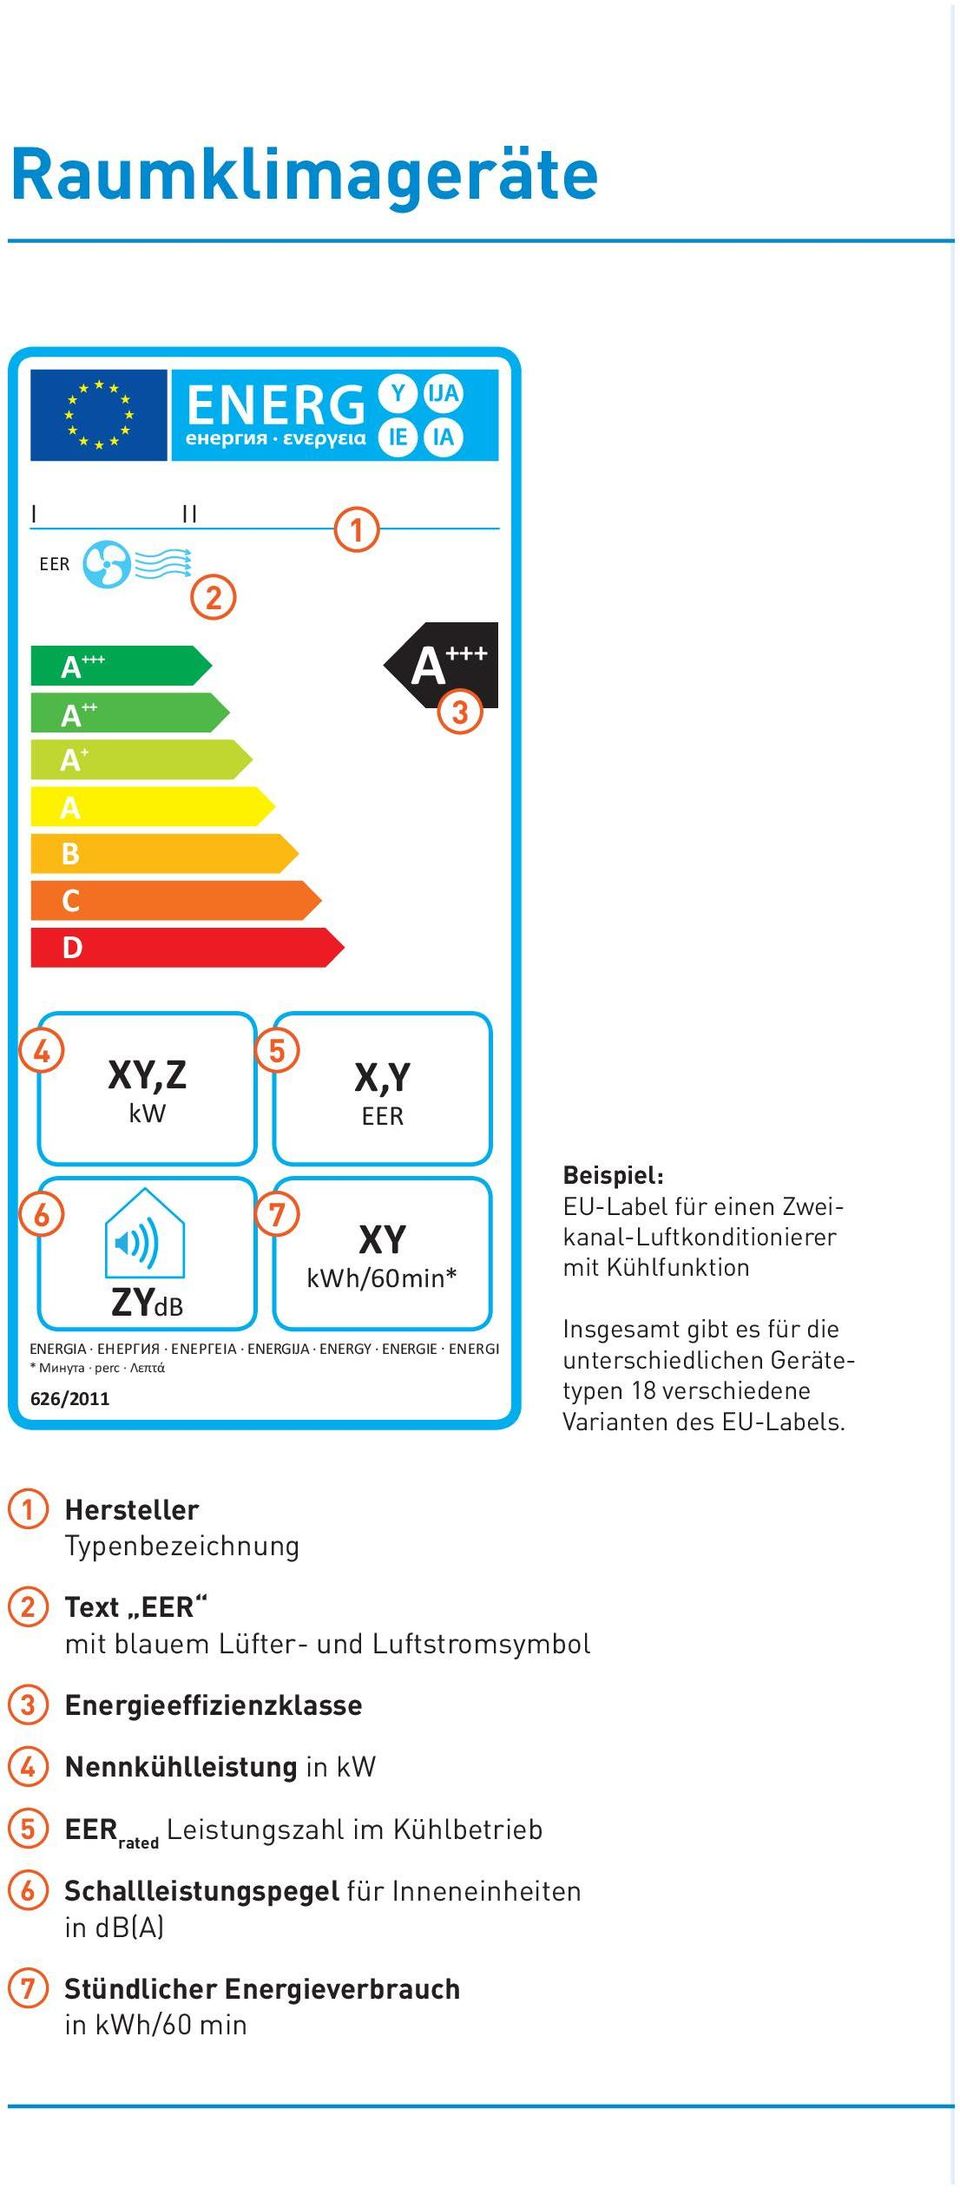 4 Nennkühlleistungin kw 5 EEr rated Leistungszahl im Kühlbetrieb 6 Schallleistungspegelfür Inneneinheiten in db() 7 StündlicherEnergieverbrauch in kwh/60 min